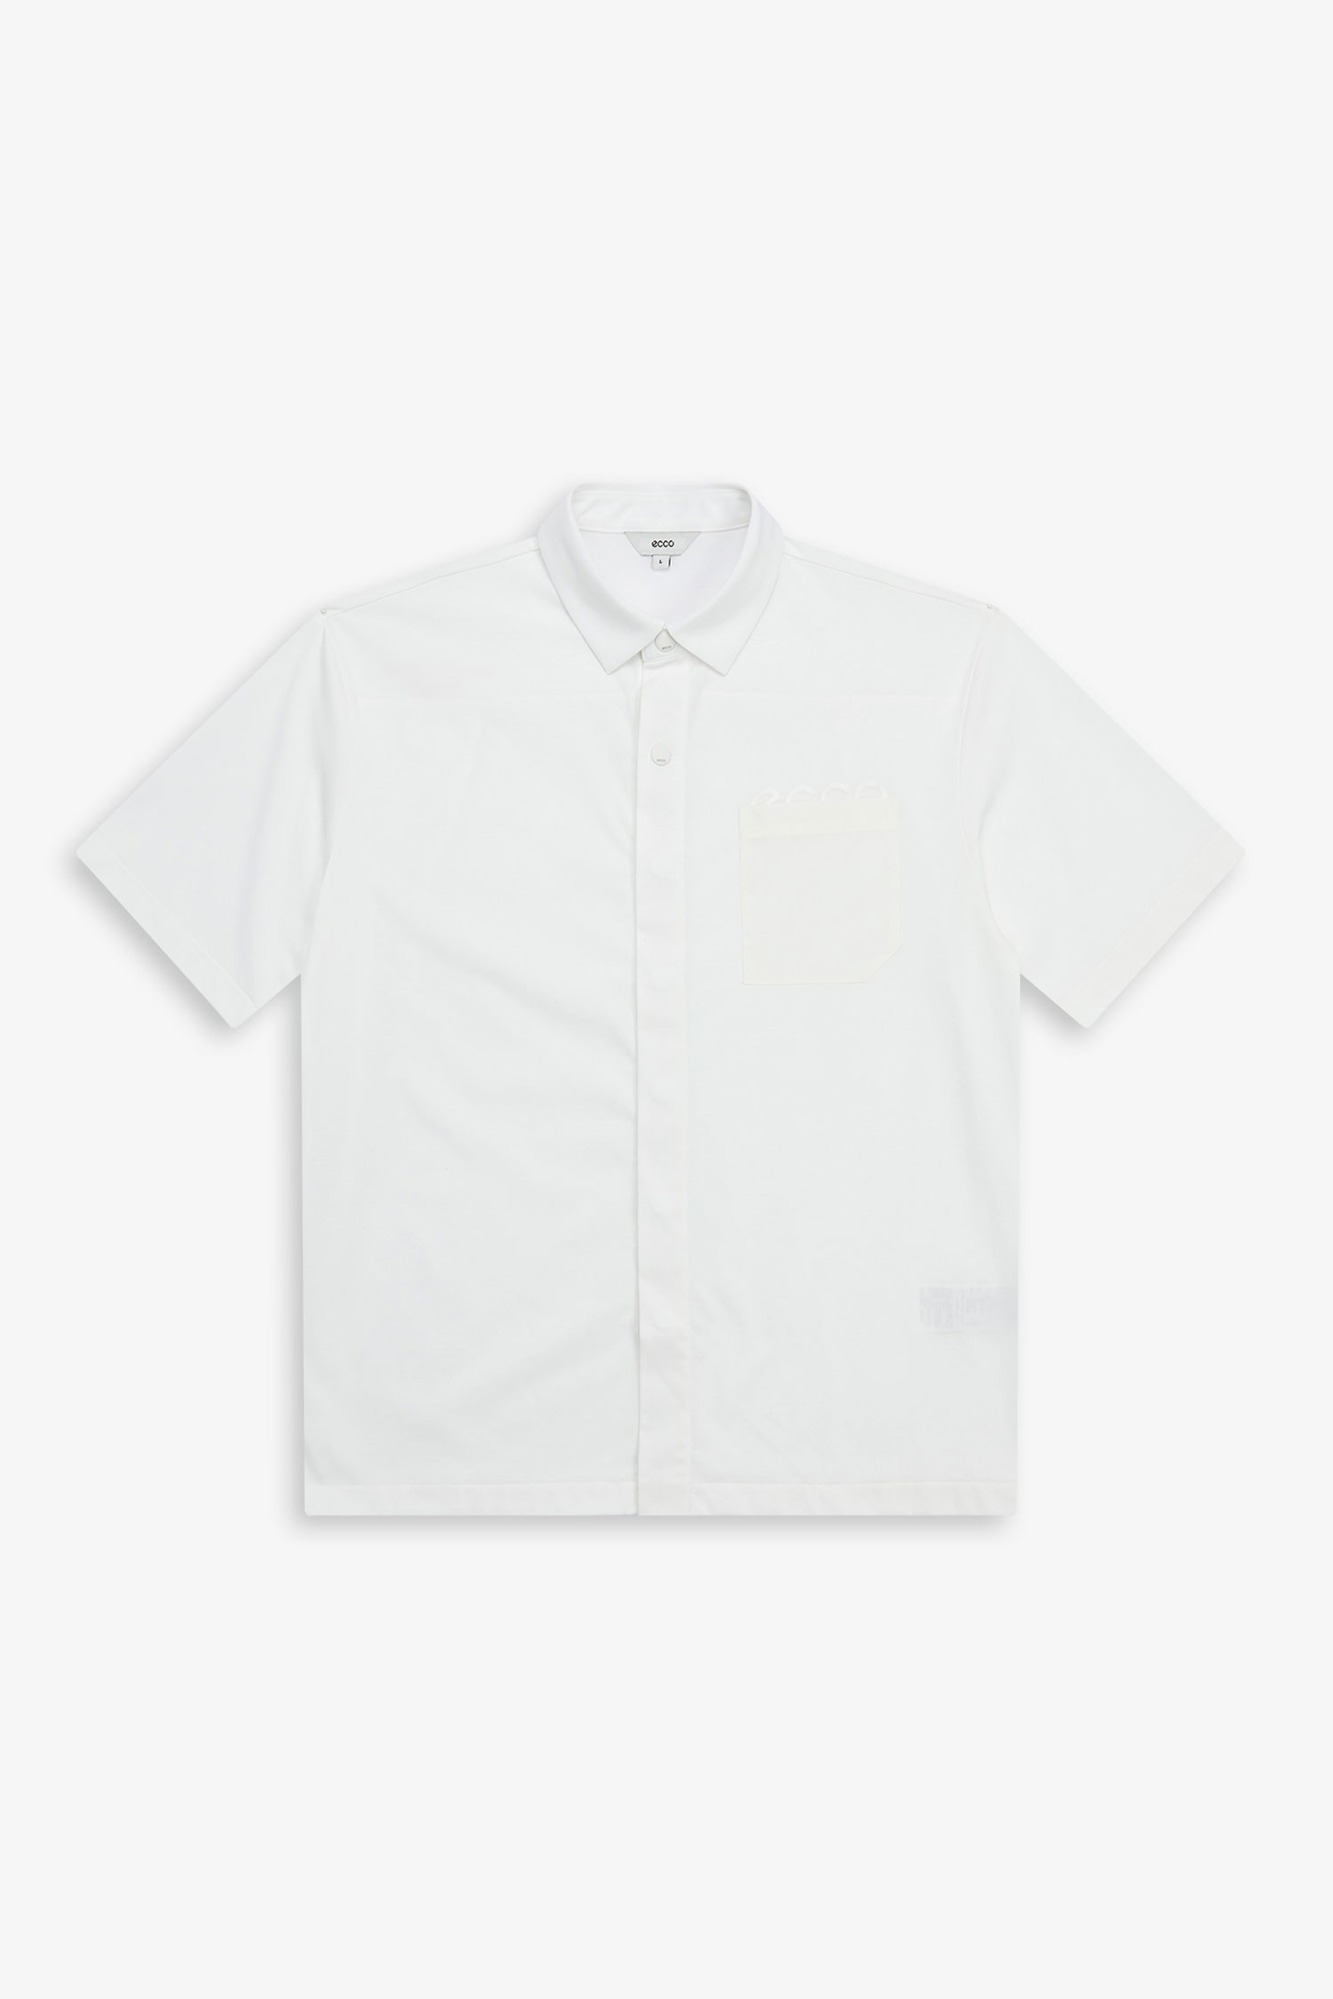 우븐 포켓 셔츠형 풀오픈 반팔 티셔츠